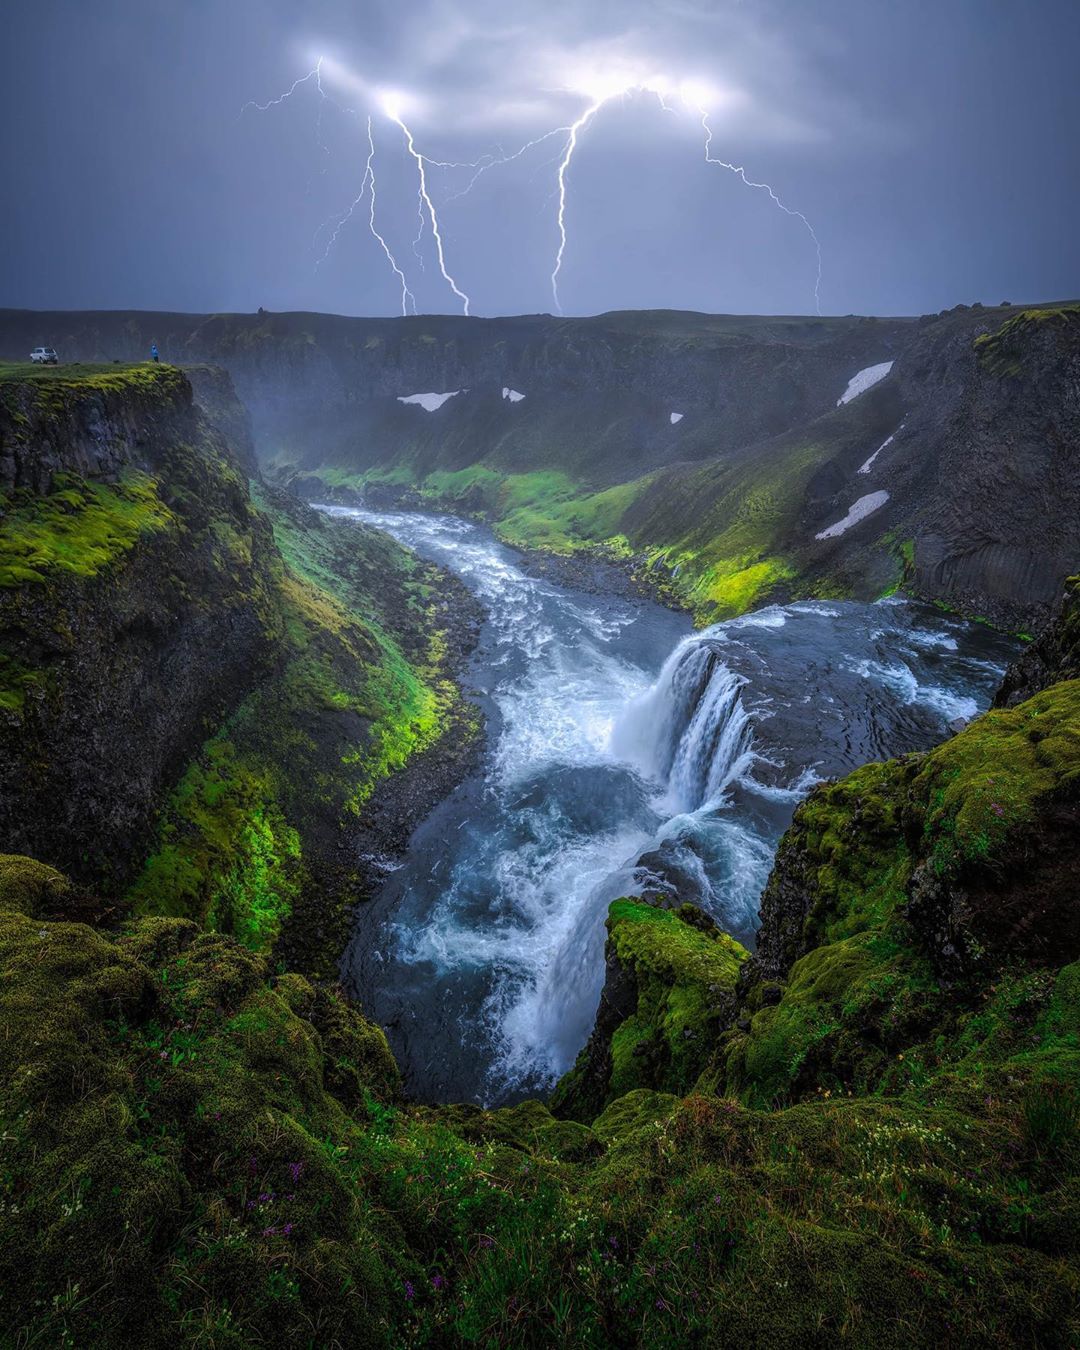 Планета в чудо-объективе Тимо Хайнца Хайнц, через, более, фотограф, этого, Исландии, снимок, Каждый, настроение, реальностью», атмосфера, которую, стала, которая, мечтой, призму, собственную, миром, красотой, передать